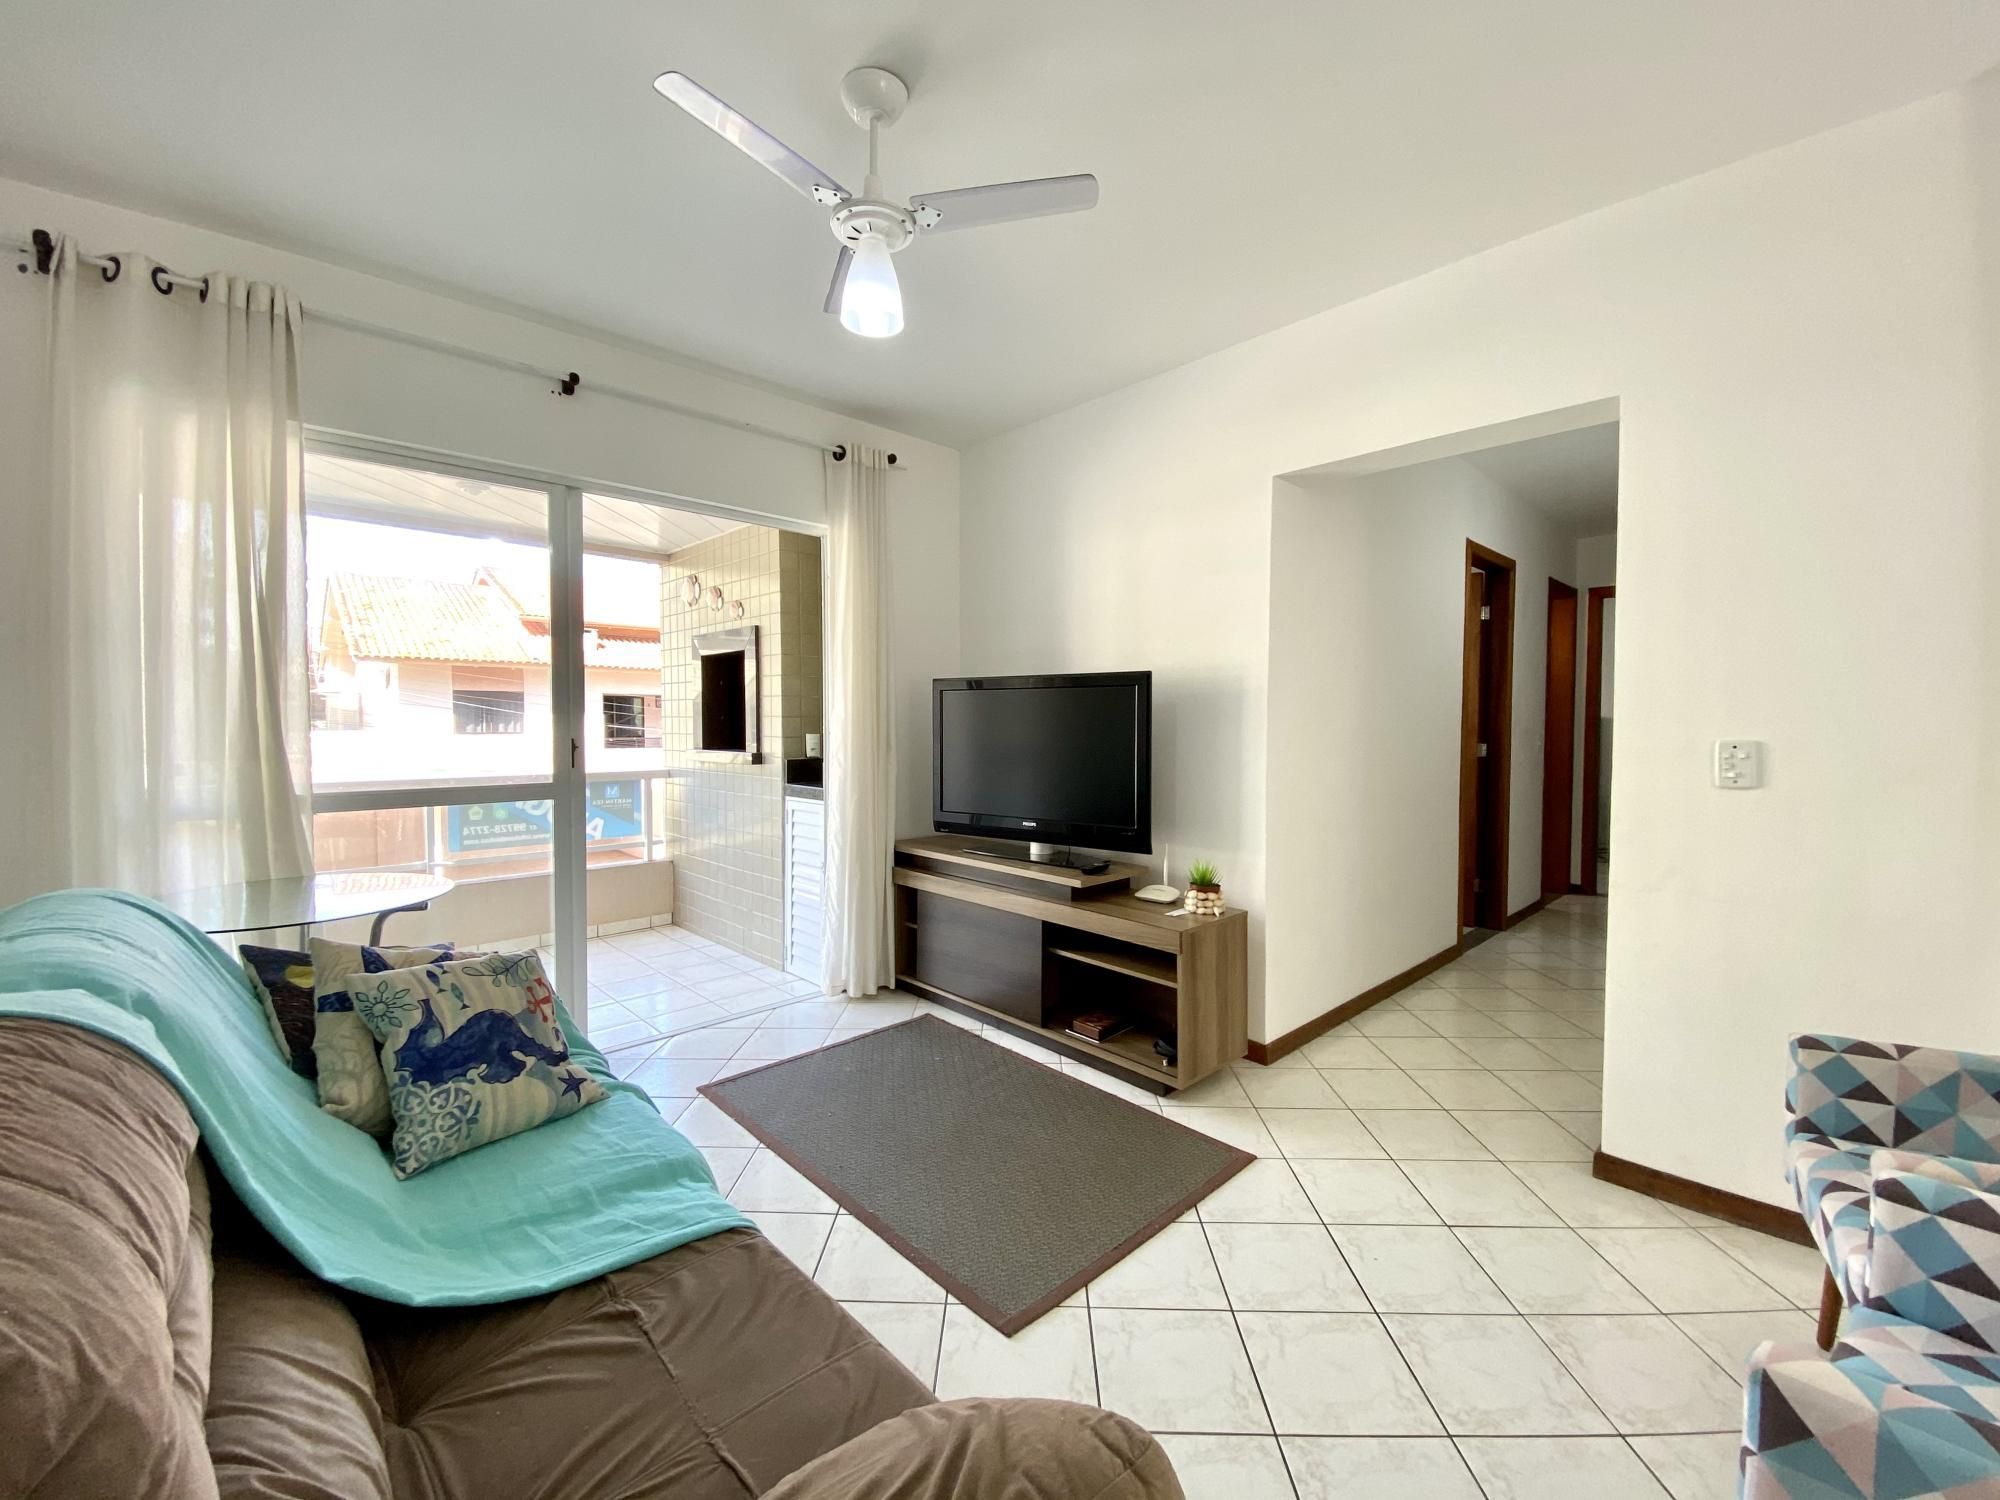 Apartamento com 3 Dormitórios para alugar, 95 m² valor à combinar